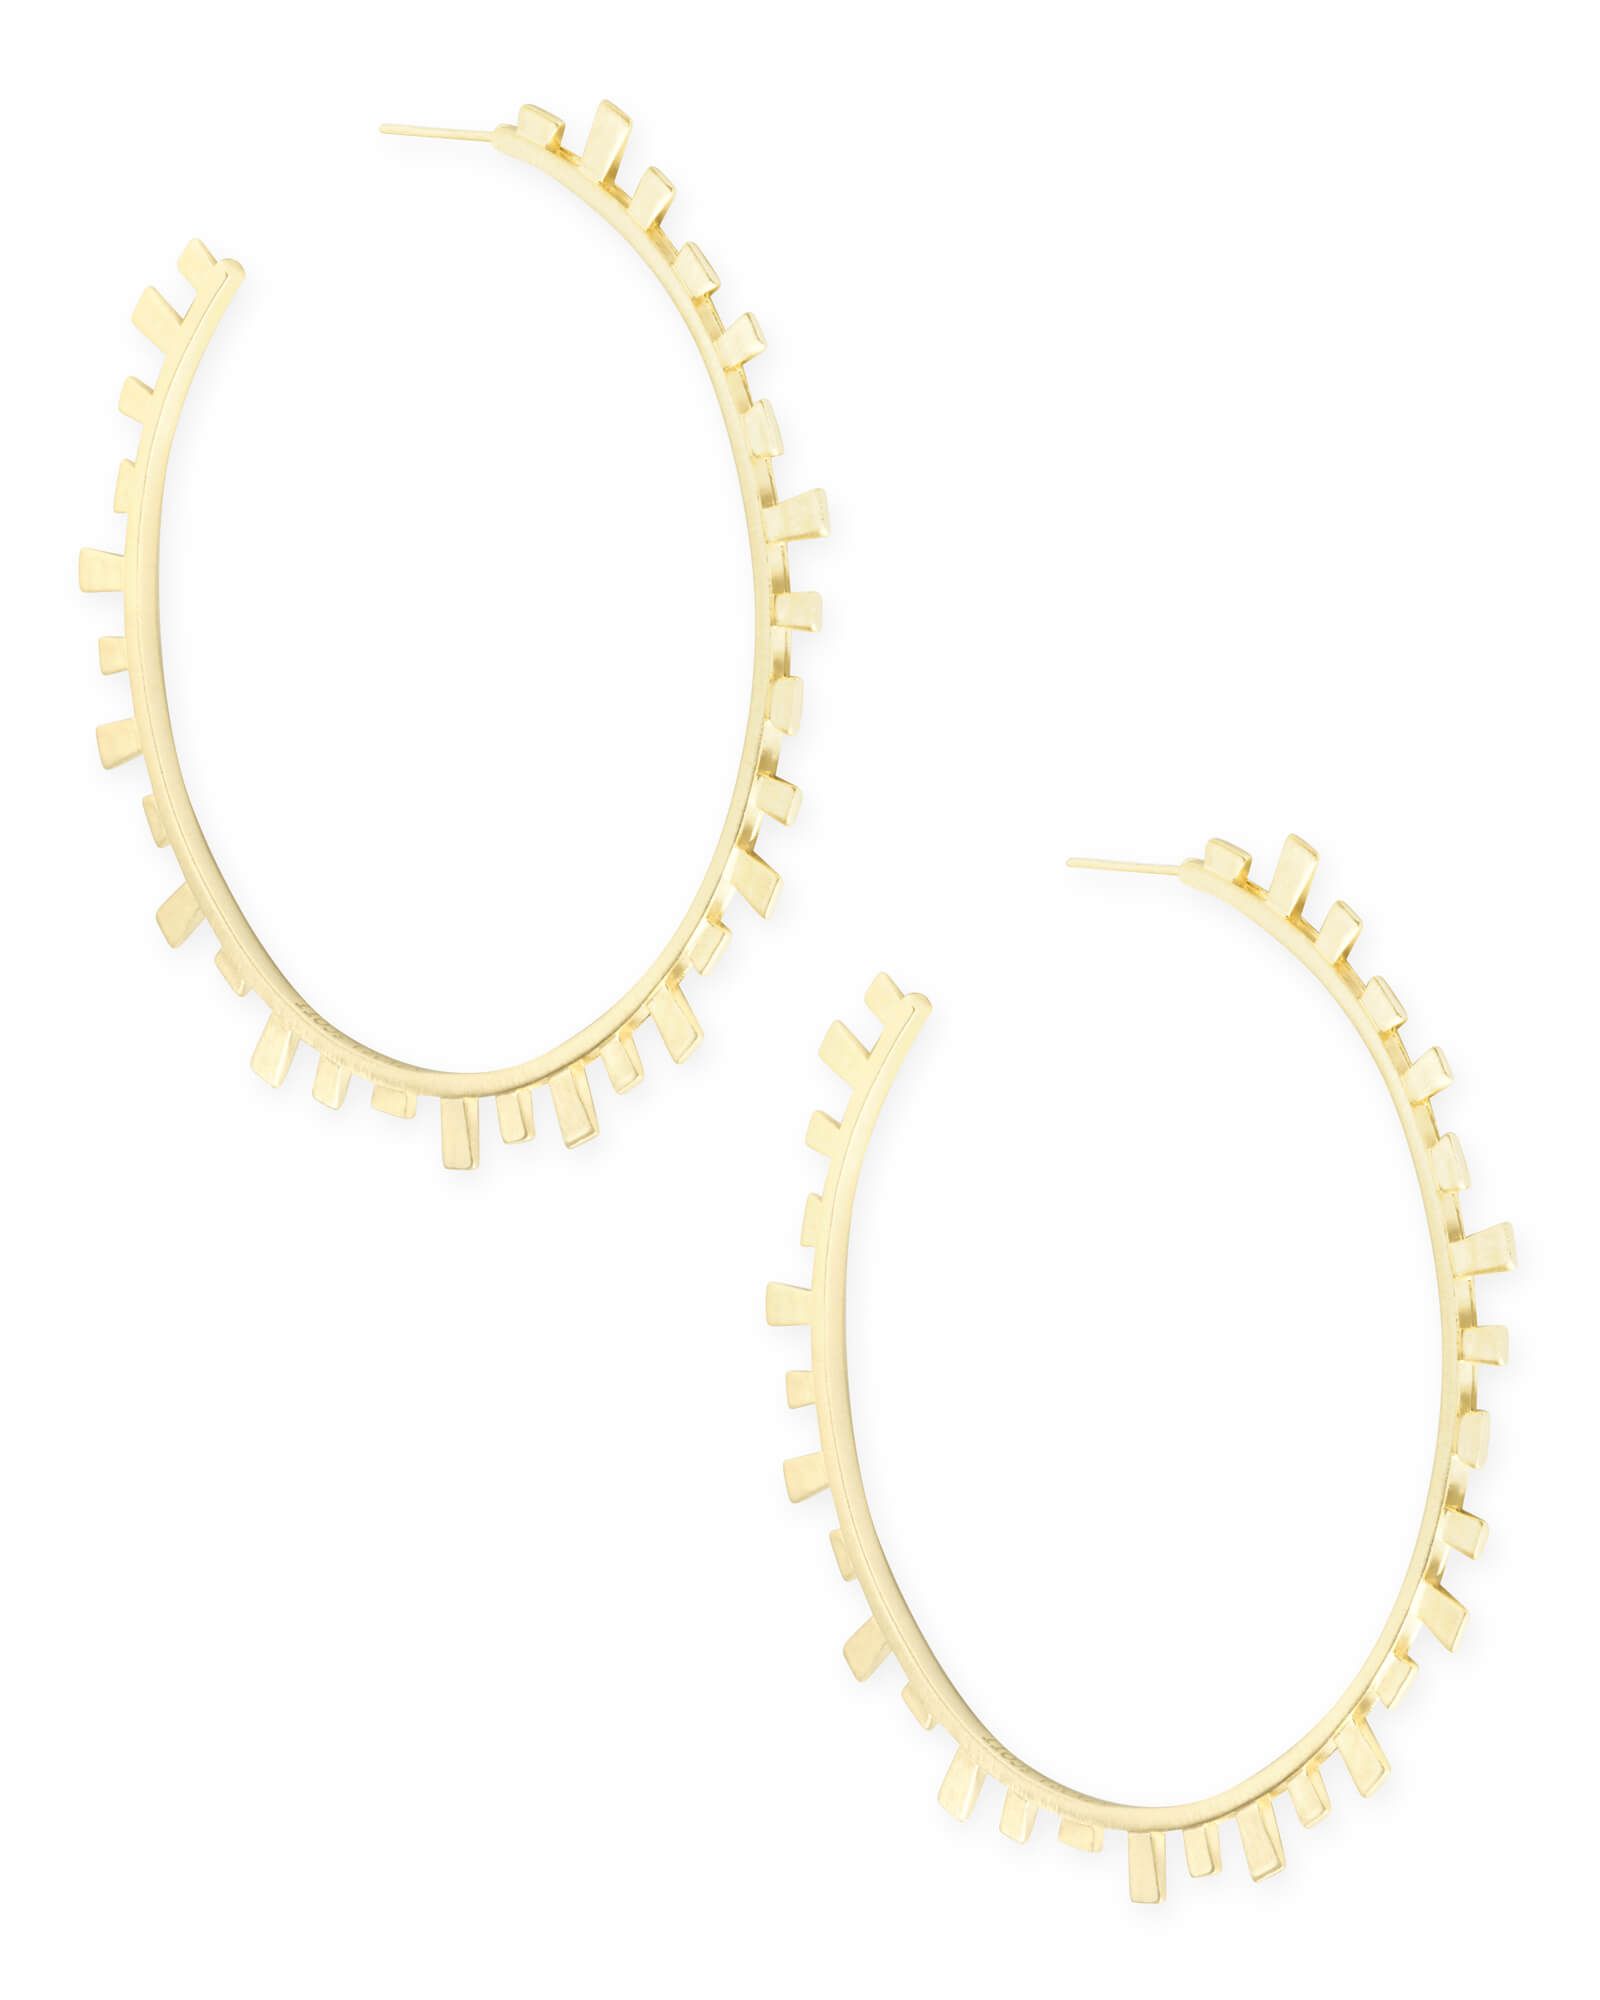 Lynne Hoop Earrings in Gold | Kendra Scott | Kendra Scott